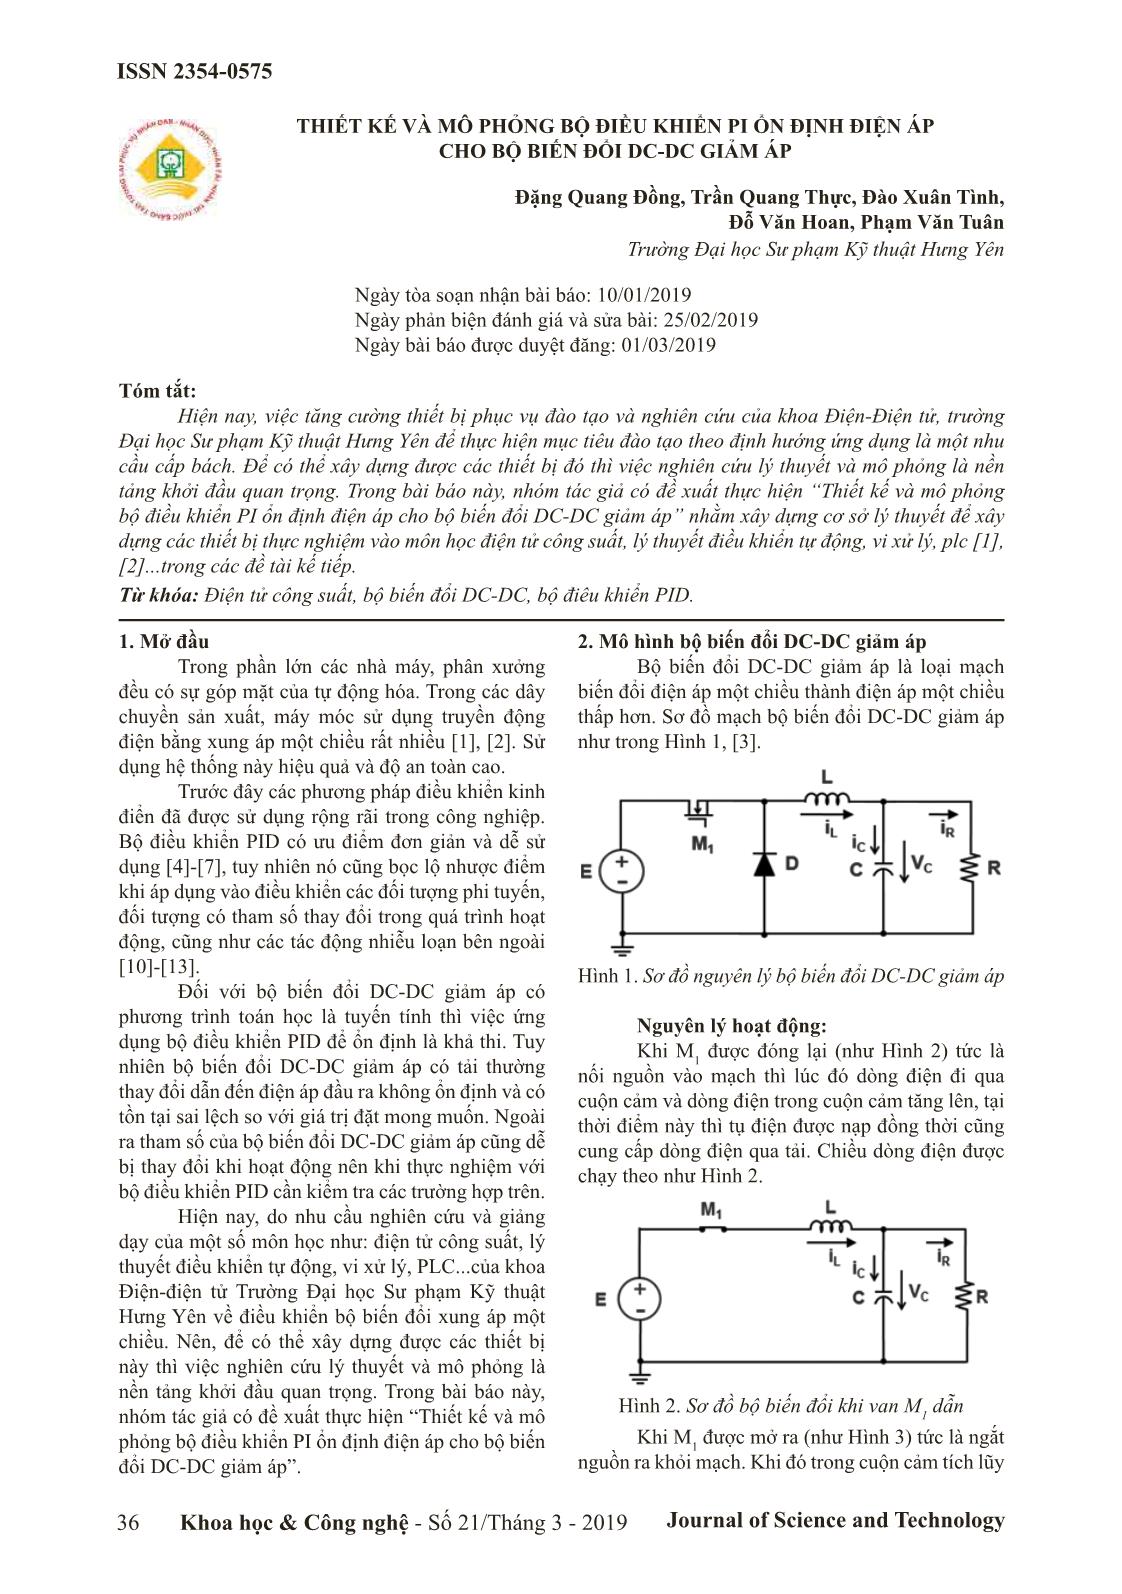 Thiết kế và mô phỏng bộ điều khiển pi ổn định điện áp cho bộ biến đổi DC-DC giảm áp trang 1